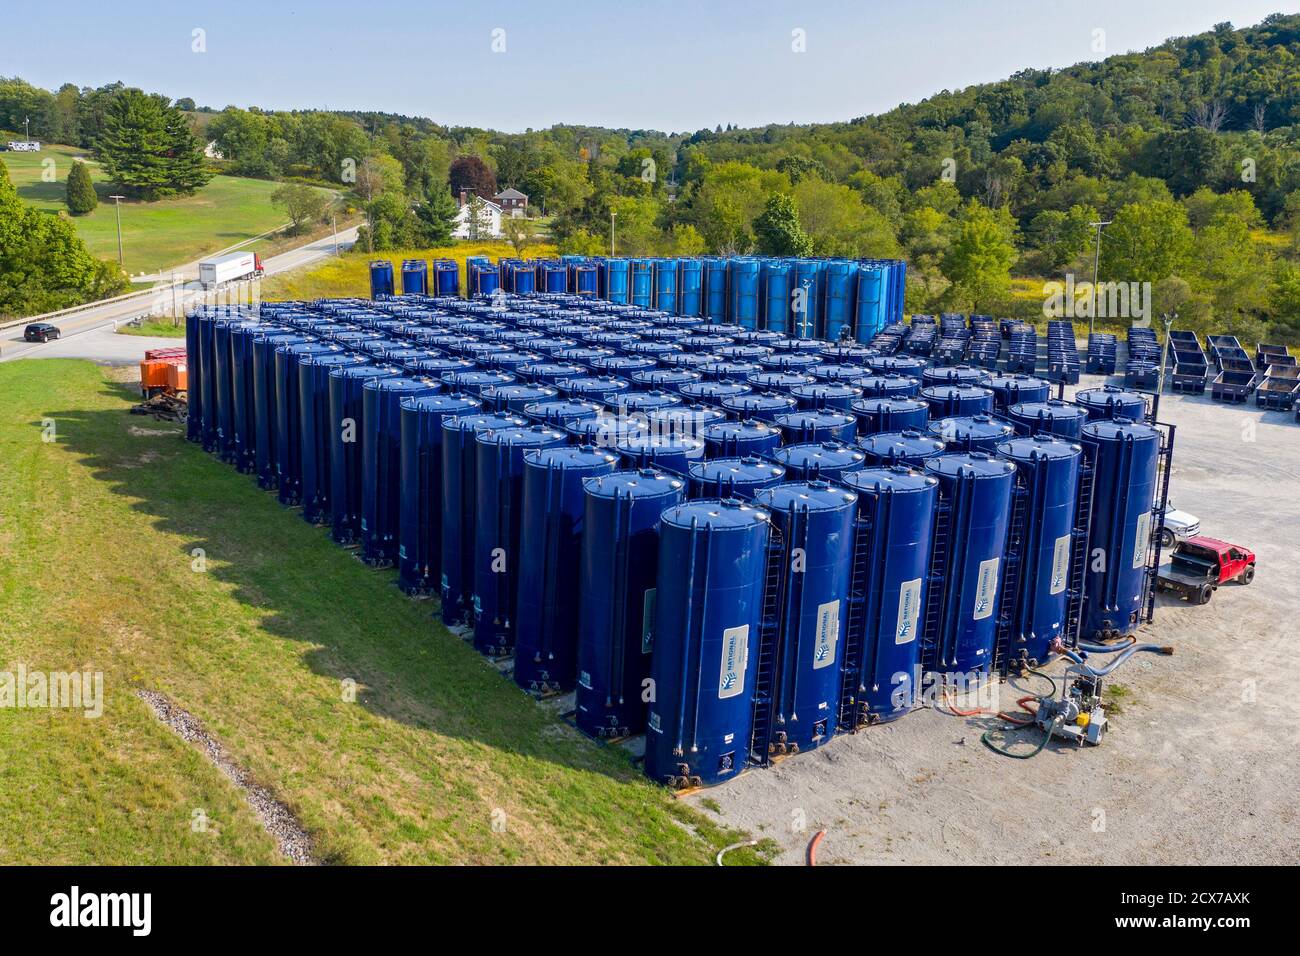 Hickory, Pennsylvania - Vertikale Frac Tanks, verwendet, um Wasser und andere Materialien für die hydraulische Frakturierung zu speichern, im ländlichen Südwesten von Pennsylvania, wo f Stockfoto